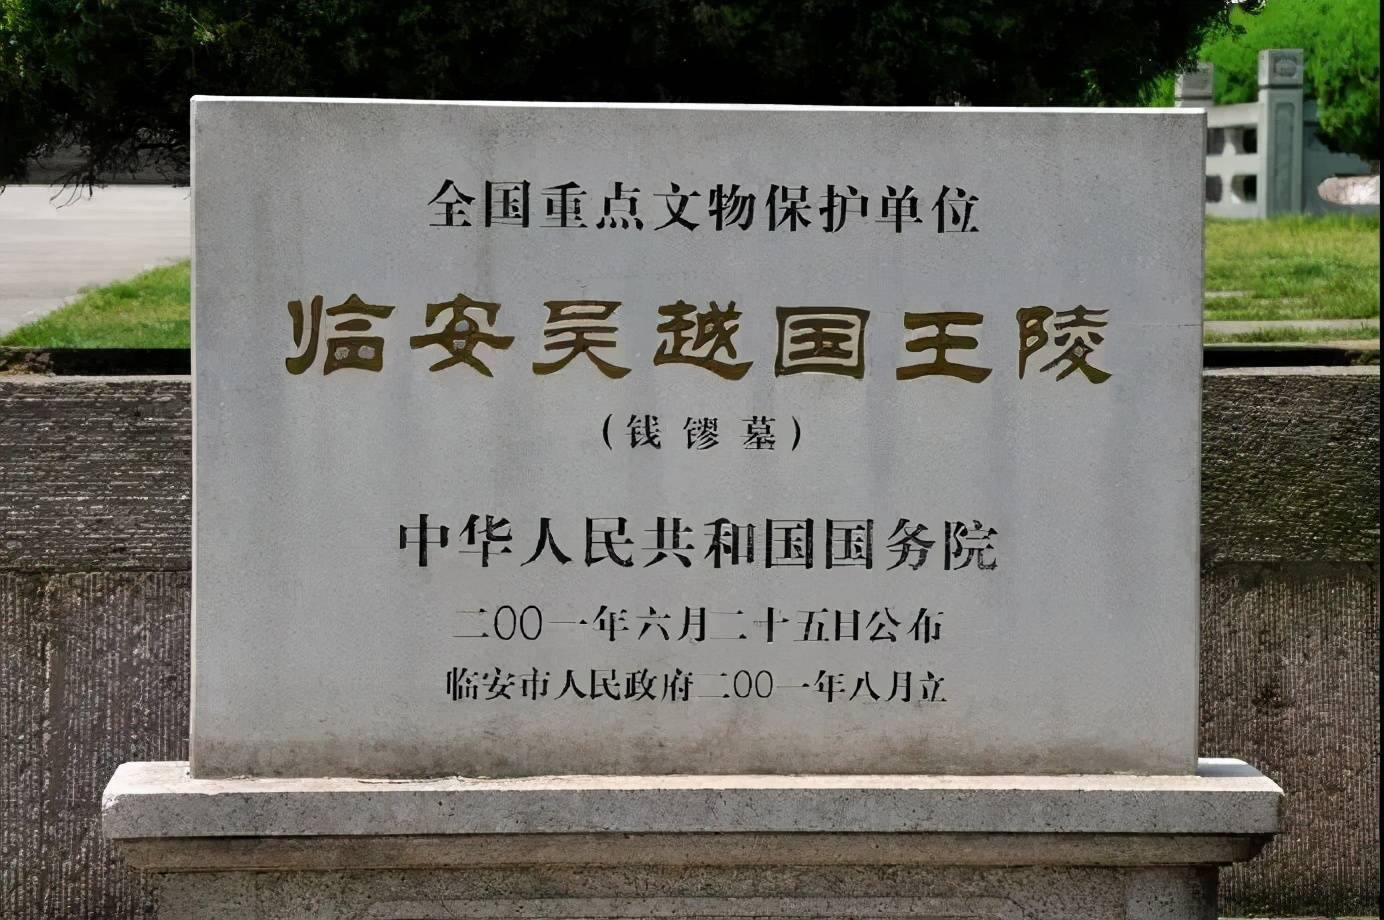 2001年6月,国务院公布临安吴越国王陵(包括钱镠墓,康陵,钱宽水邱氏墓)